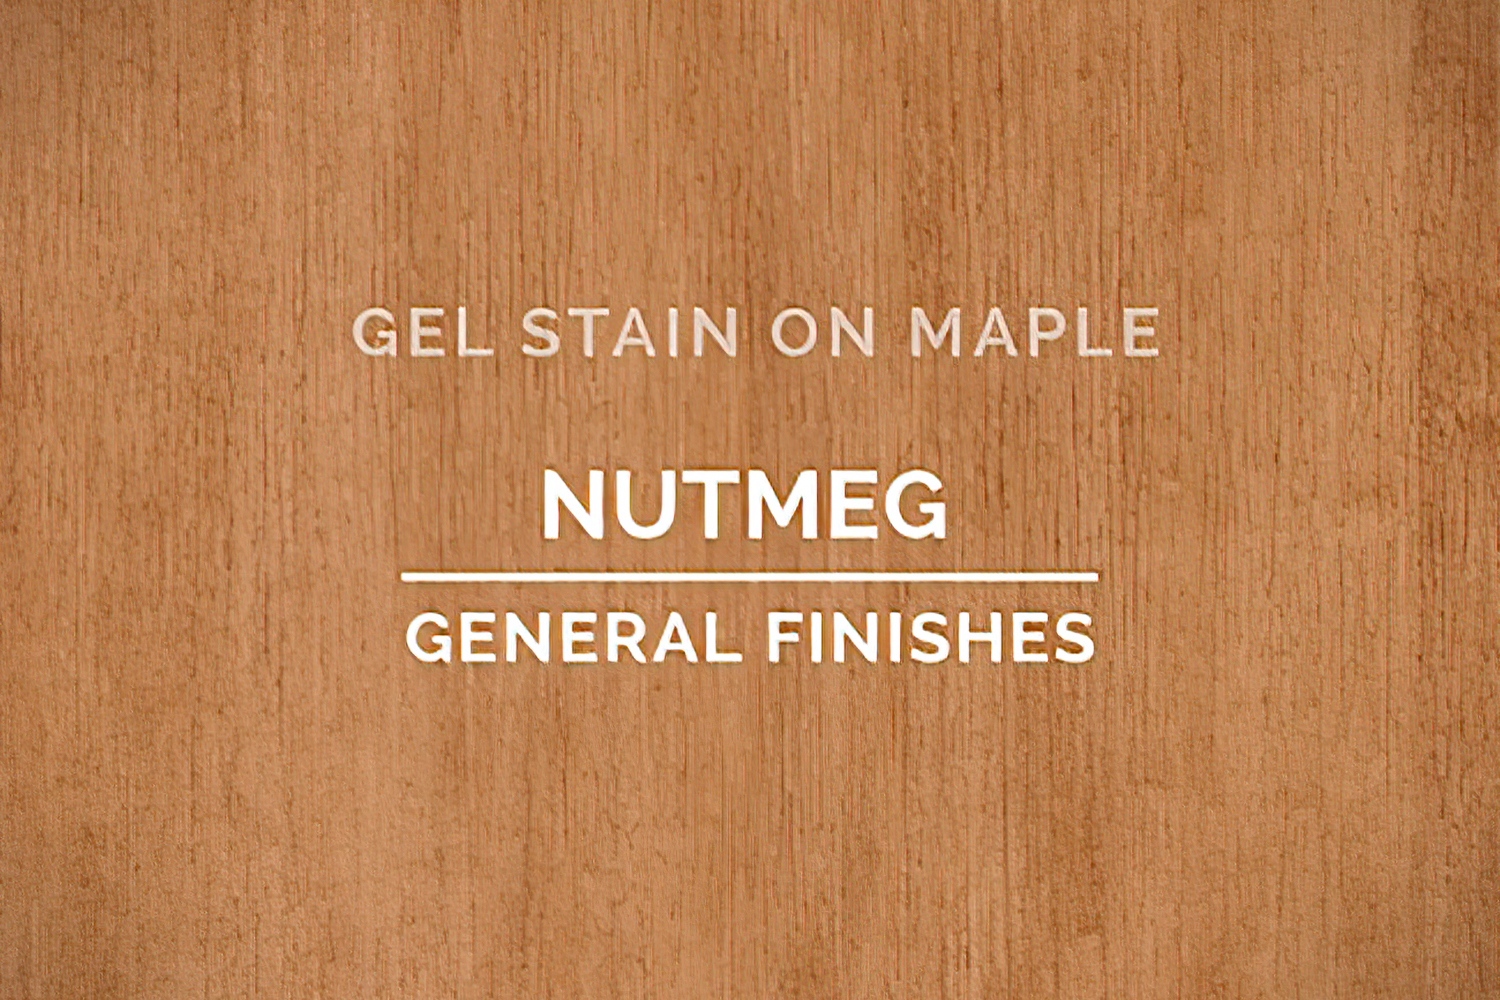 General Finishes Nutmeg Gel Stain Oil Based